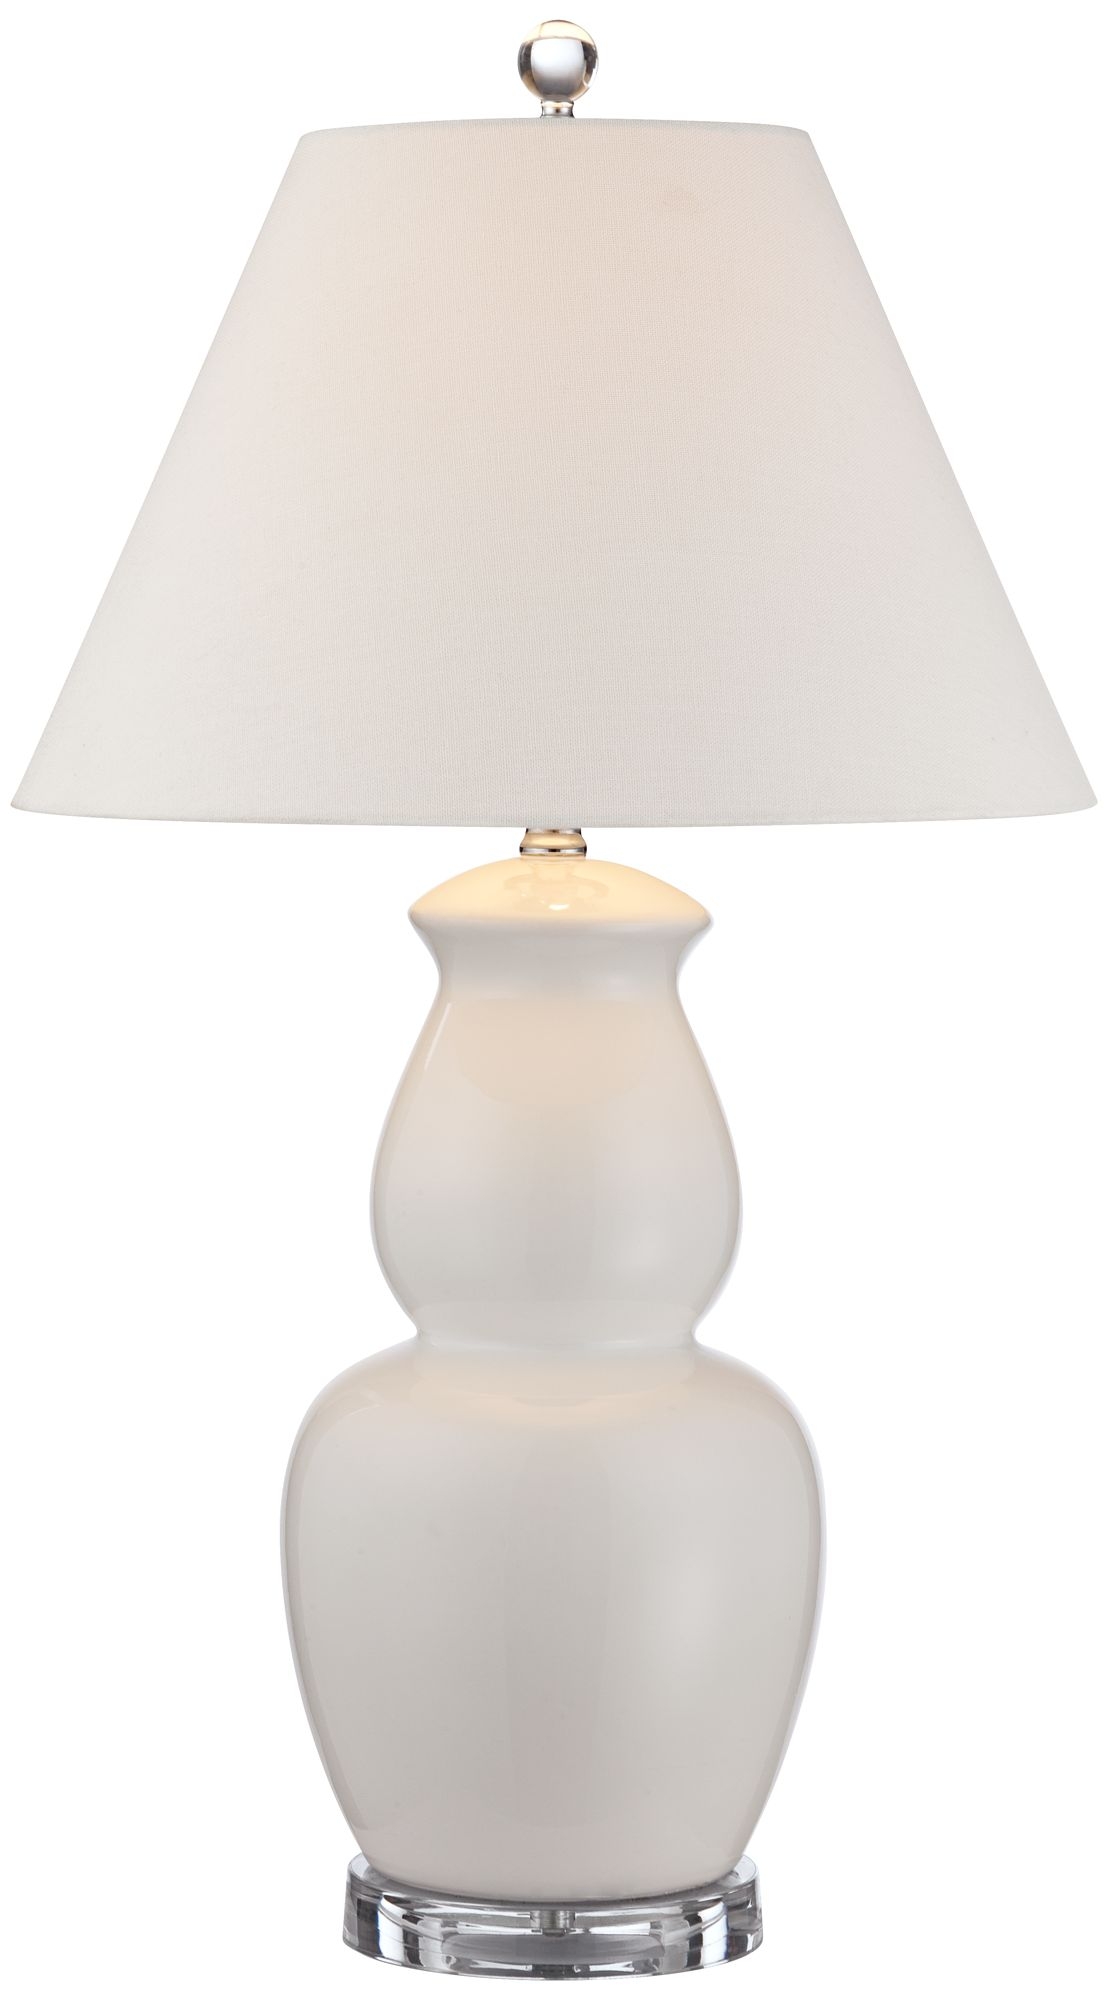 Rhonda Double Gourd Ceramic Table Lamp - Image 0